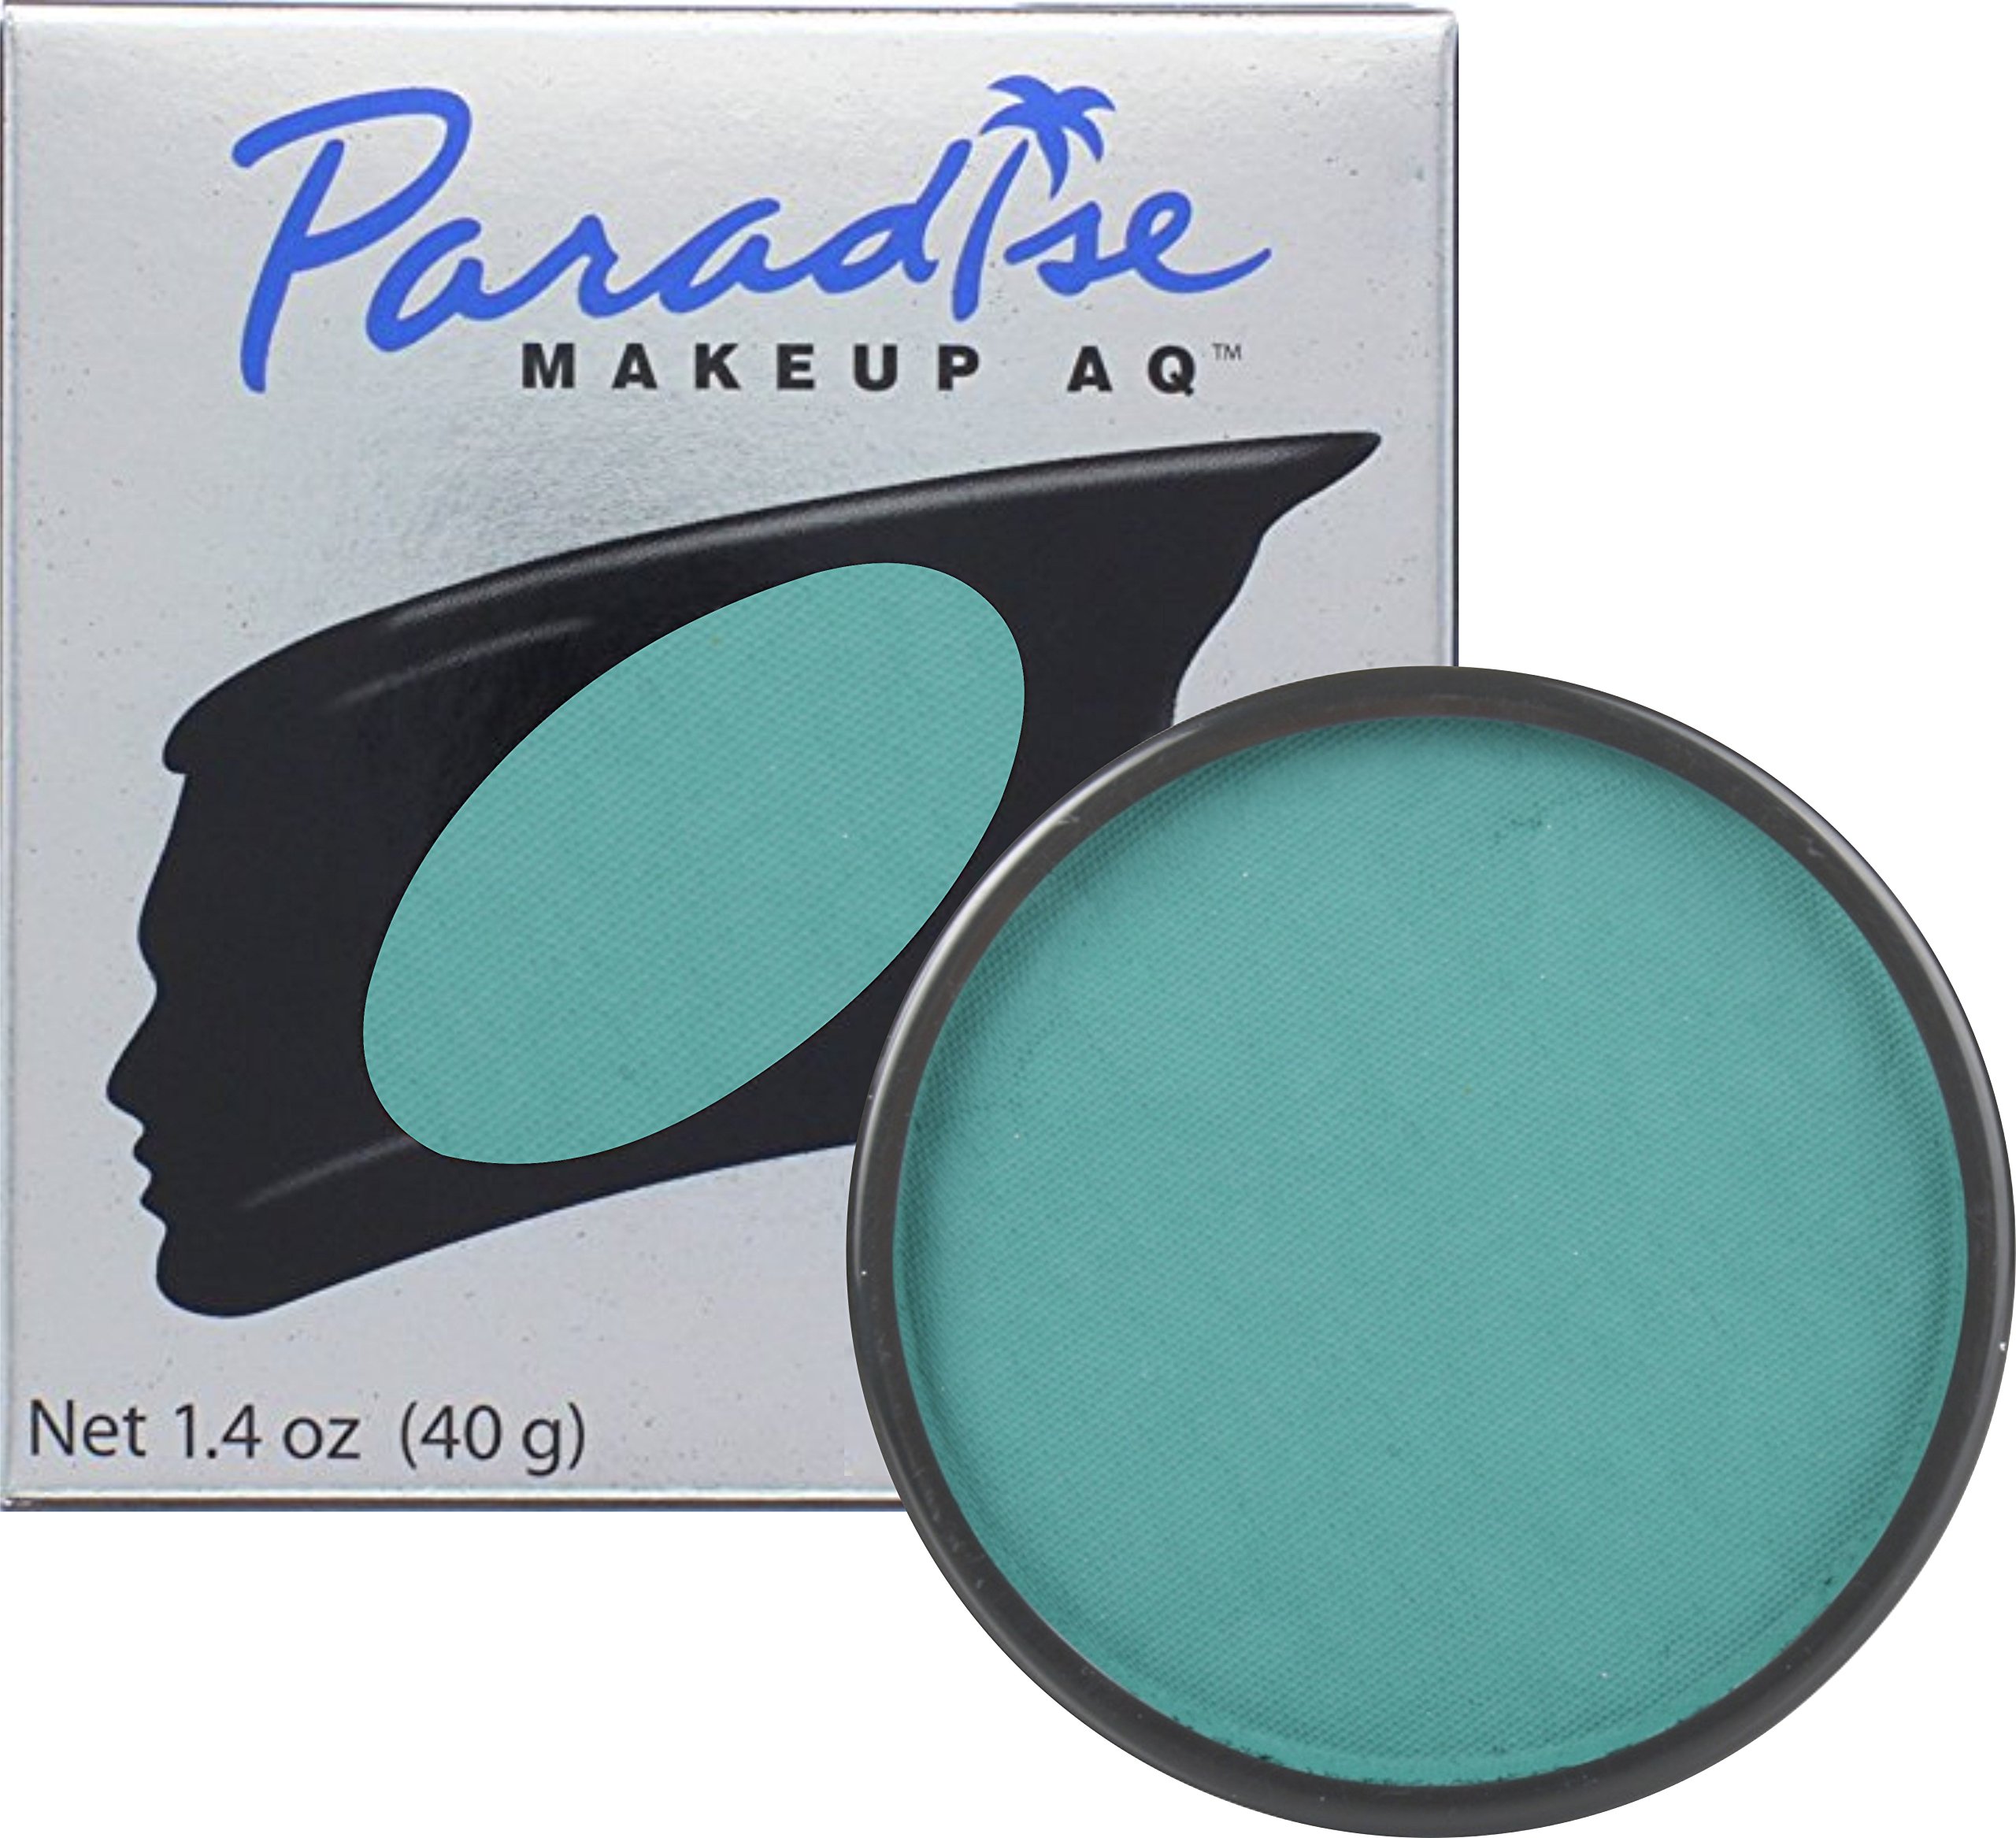  Mehron Makeup Paradise Makeup AQ 30 Color Pro Palette